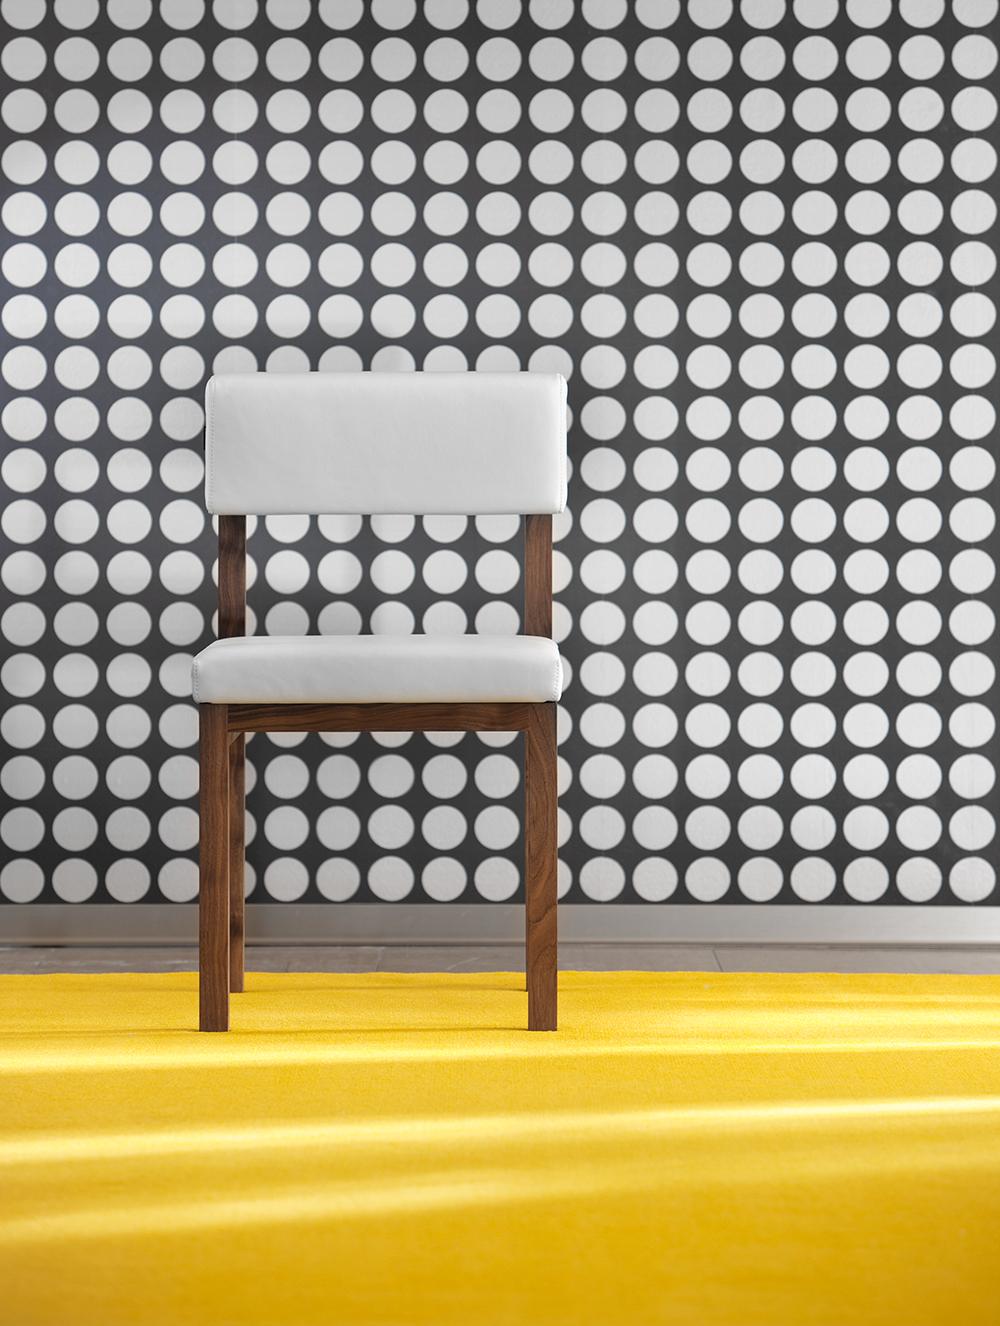 Holzstuhl mit weißem Lederbezug #stuhl #wandgestaltung #holzstuhl ©SÜDBUND eG